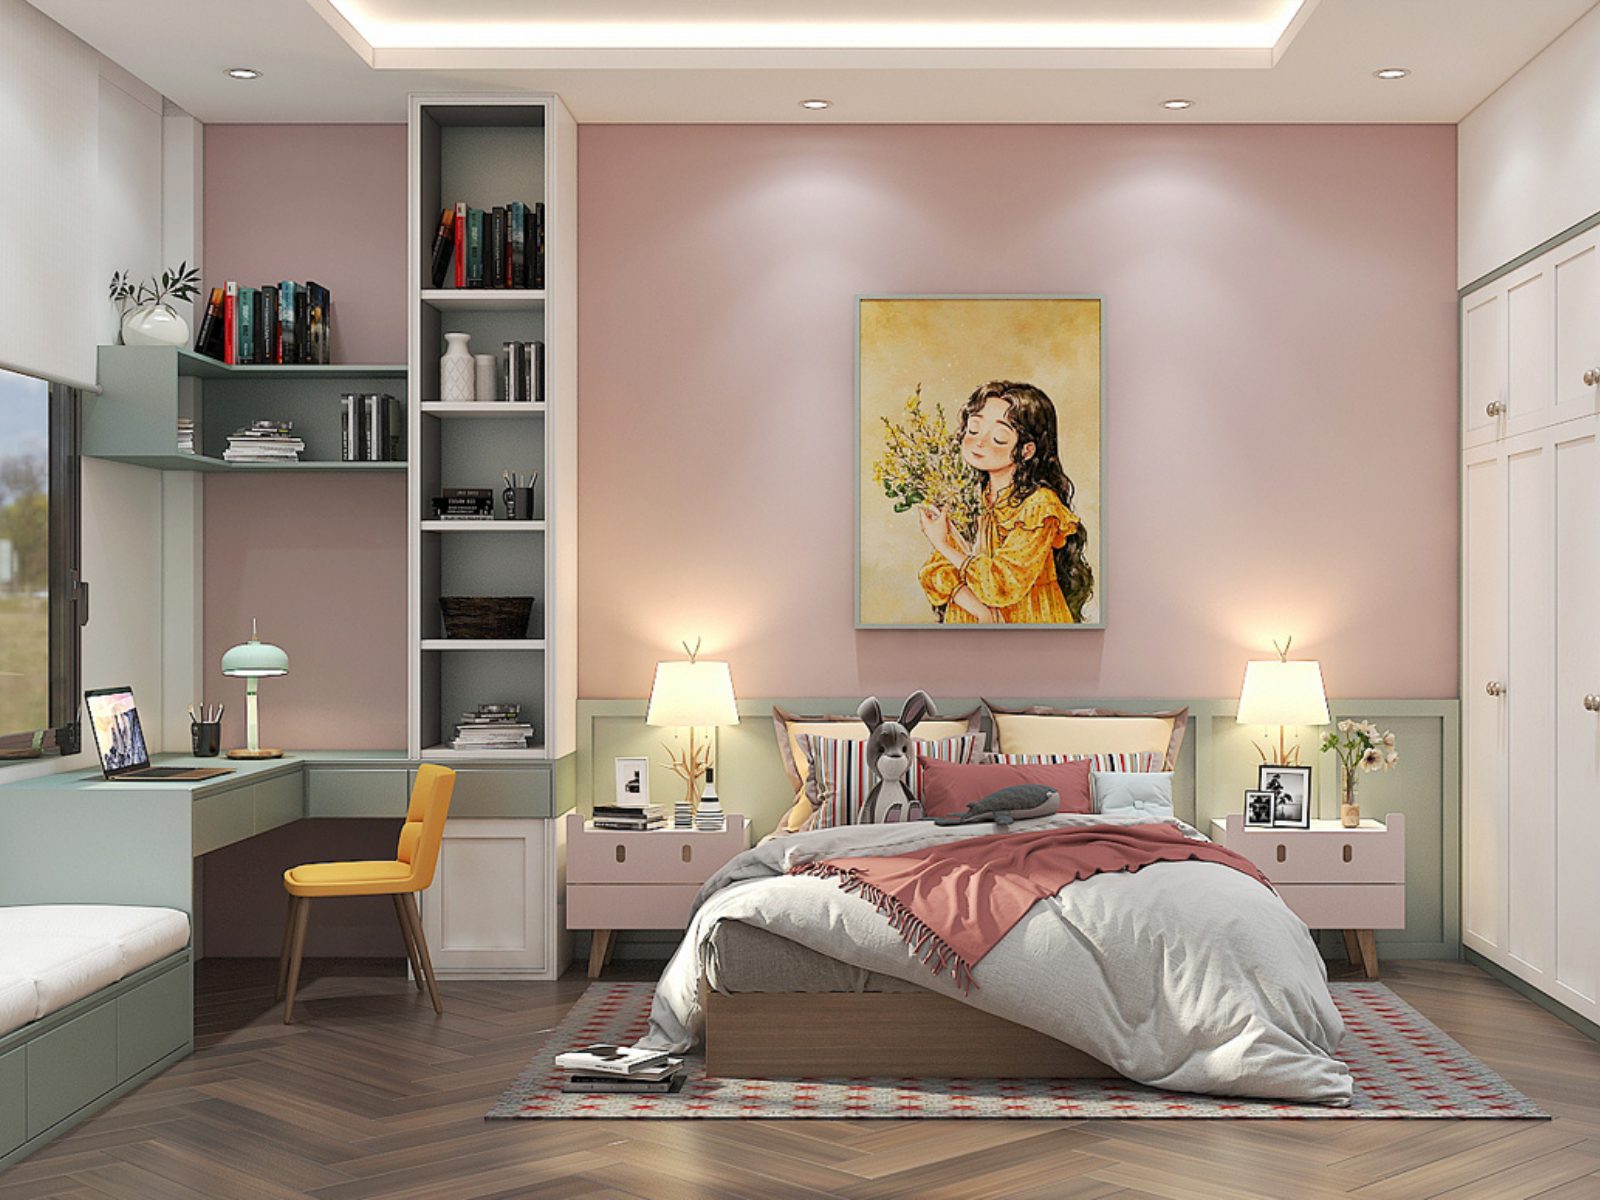 Thiết kế phòng ngủ màu hồng đẹp, đơn giản cho bé